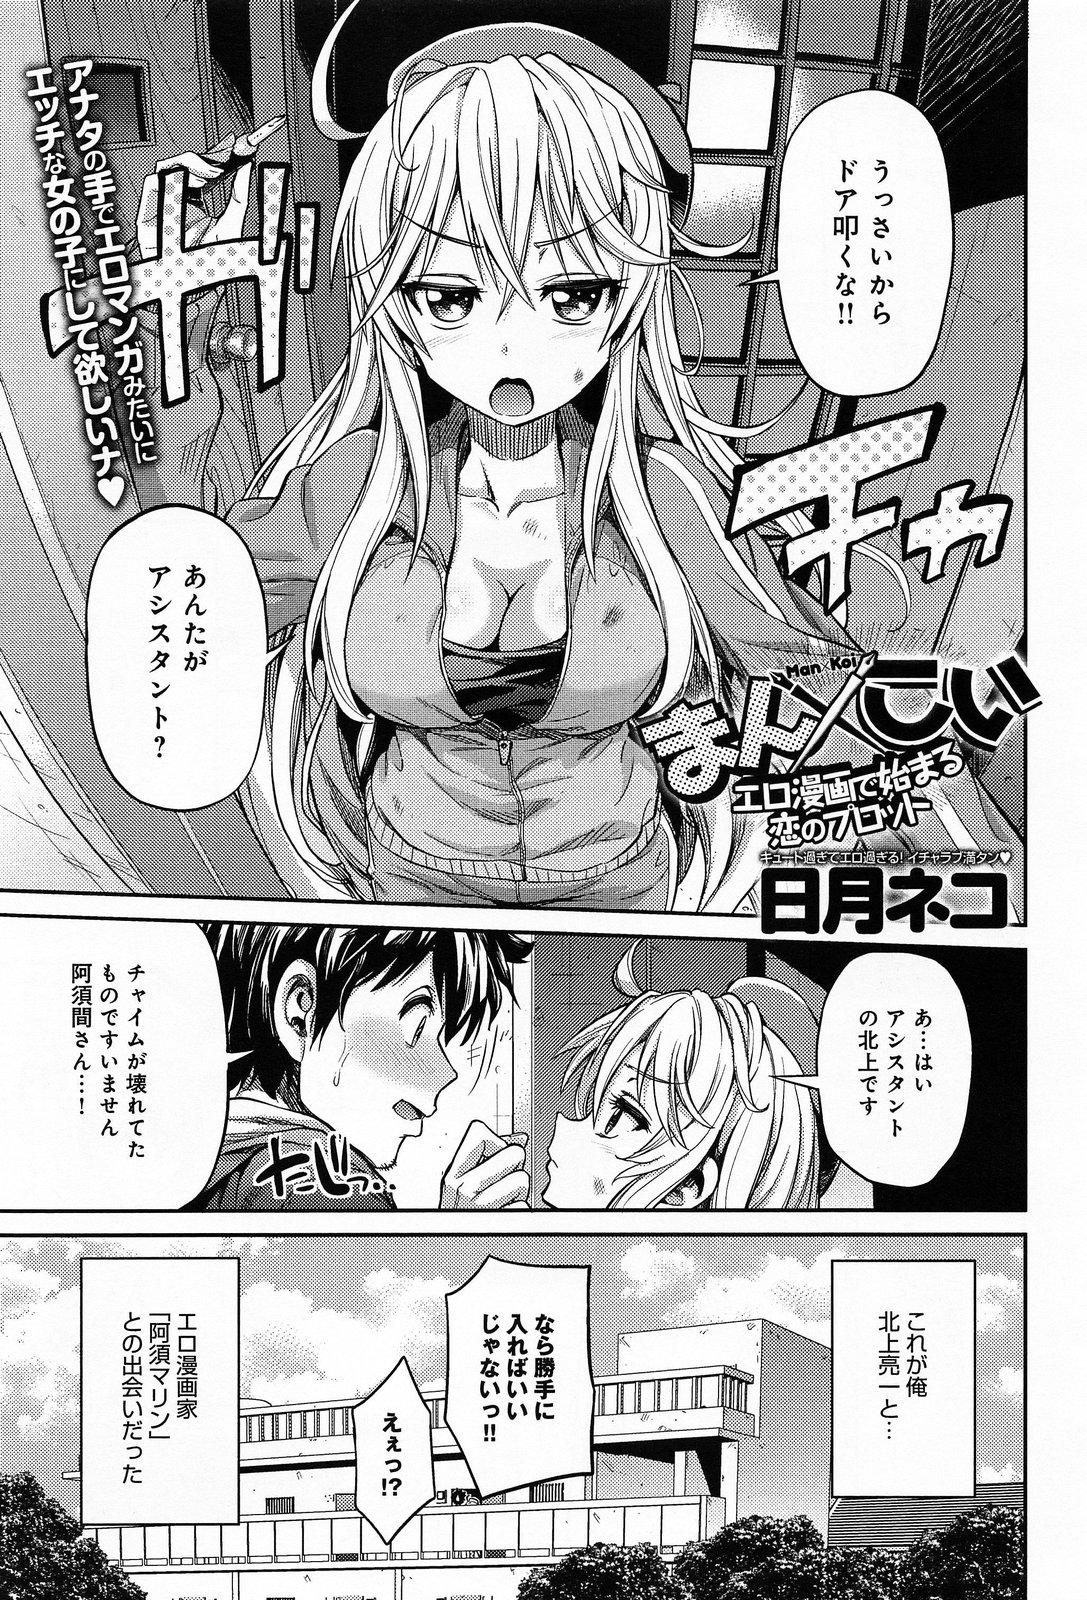 Young Tits Man × Koi Ero Manga de Hajimaru Koi no Plot Doctor Sex - Page 1